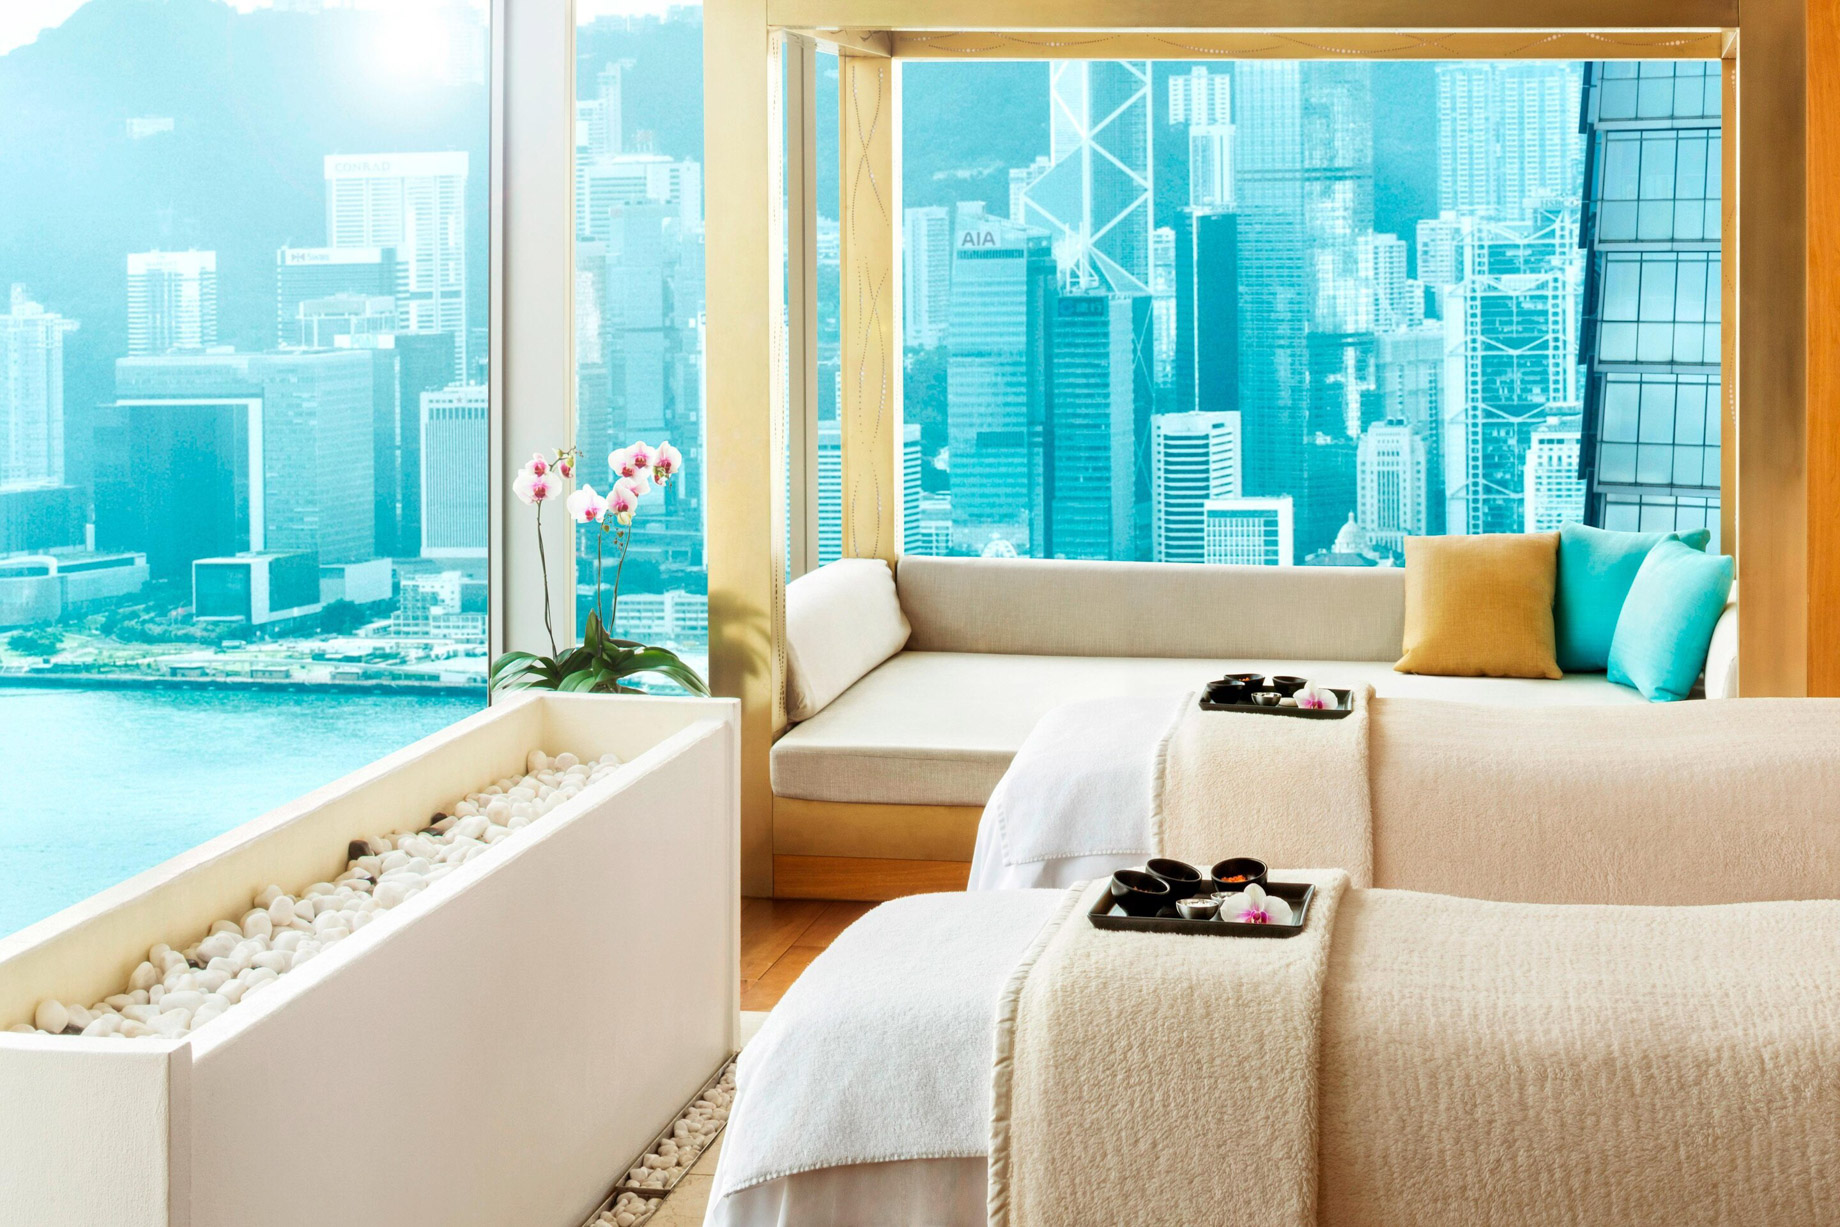 W Hong Kong Hotel – Hong Kong – Bliss Spa View